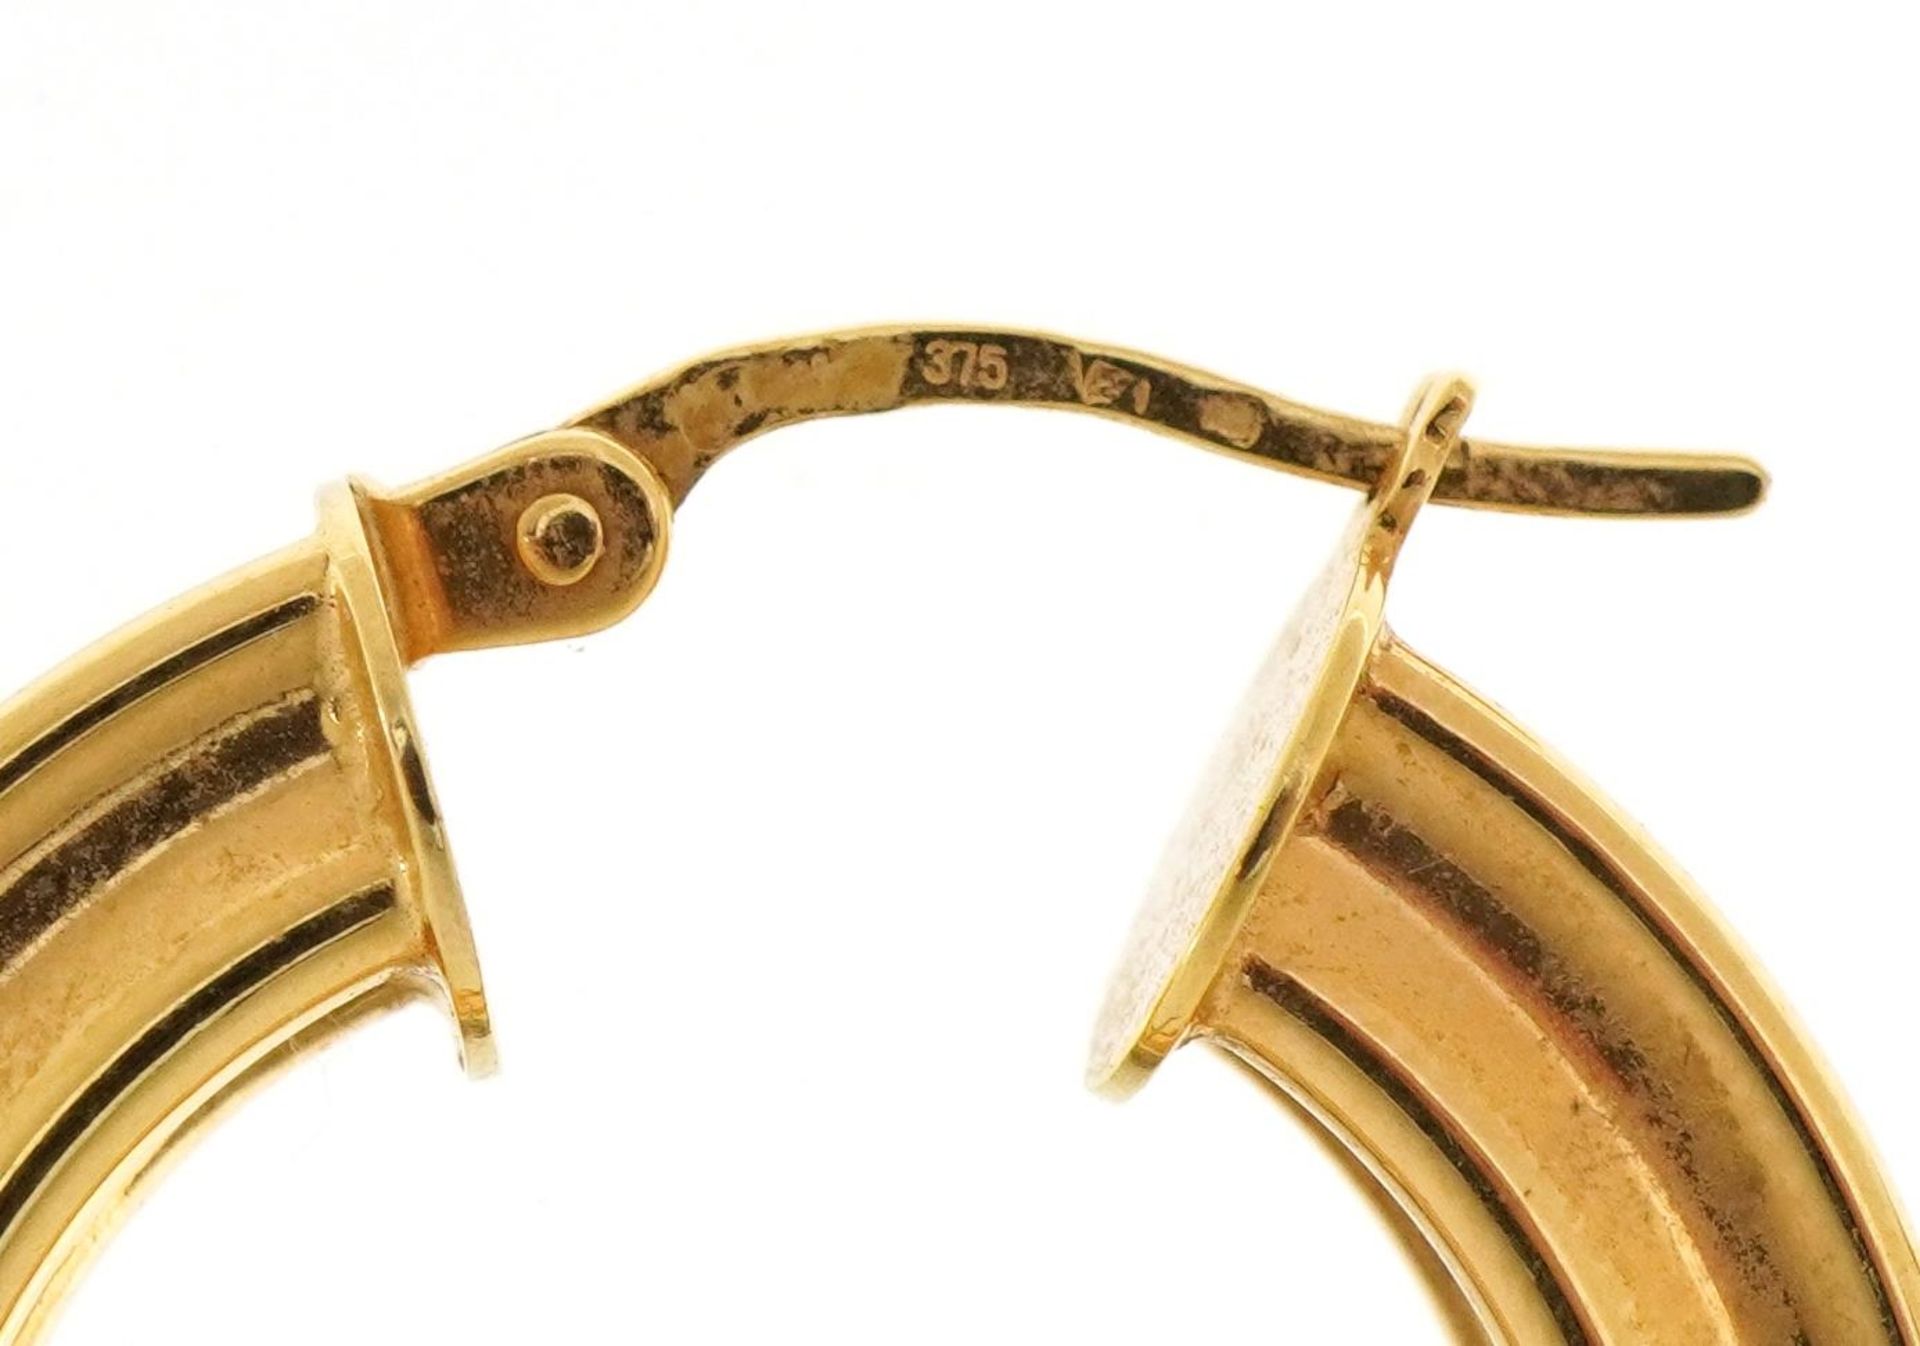 Pair of 9ct gold hoop earrings, 2.4cm in diameter, 3.8g - Image 3 of 3